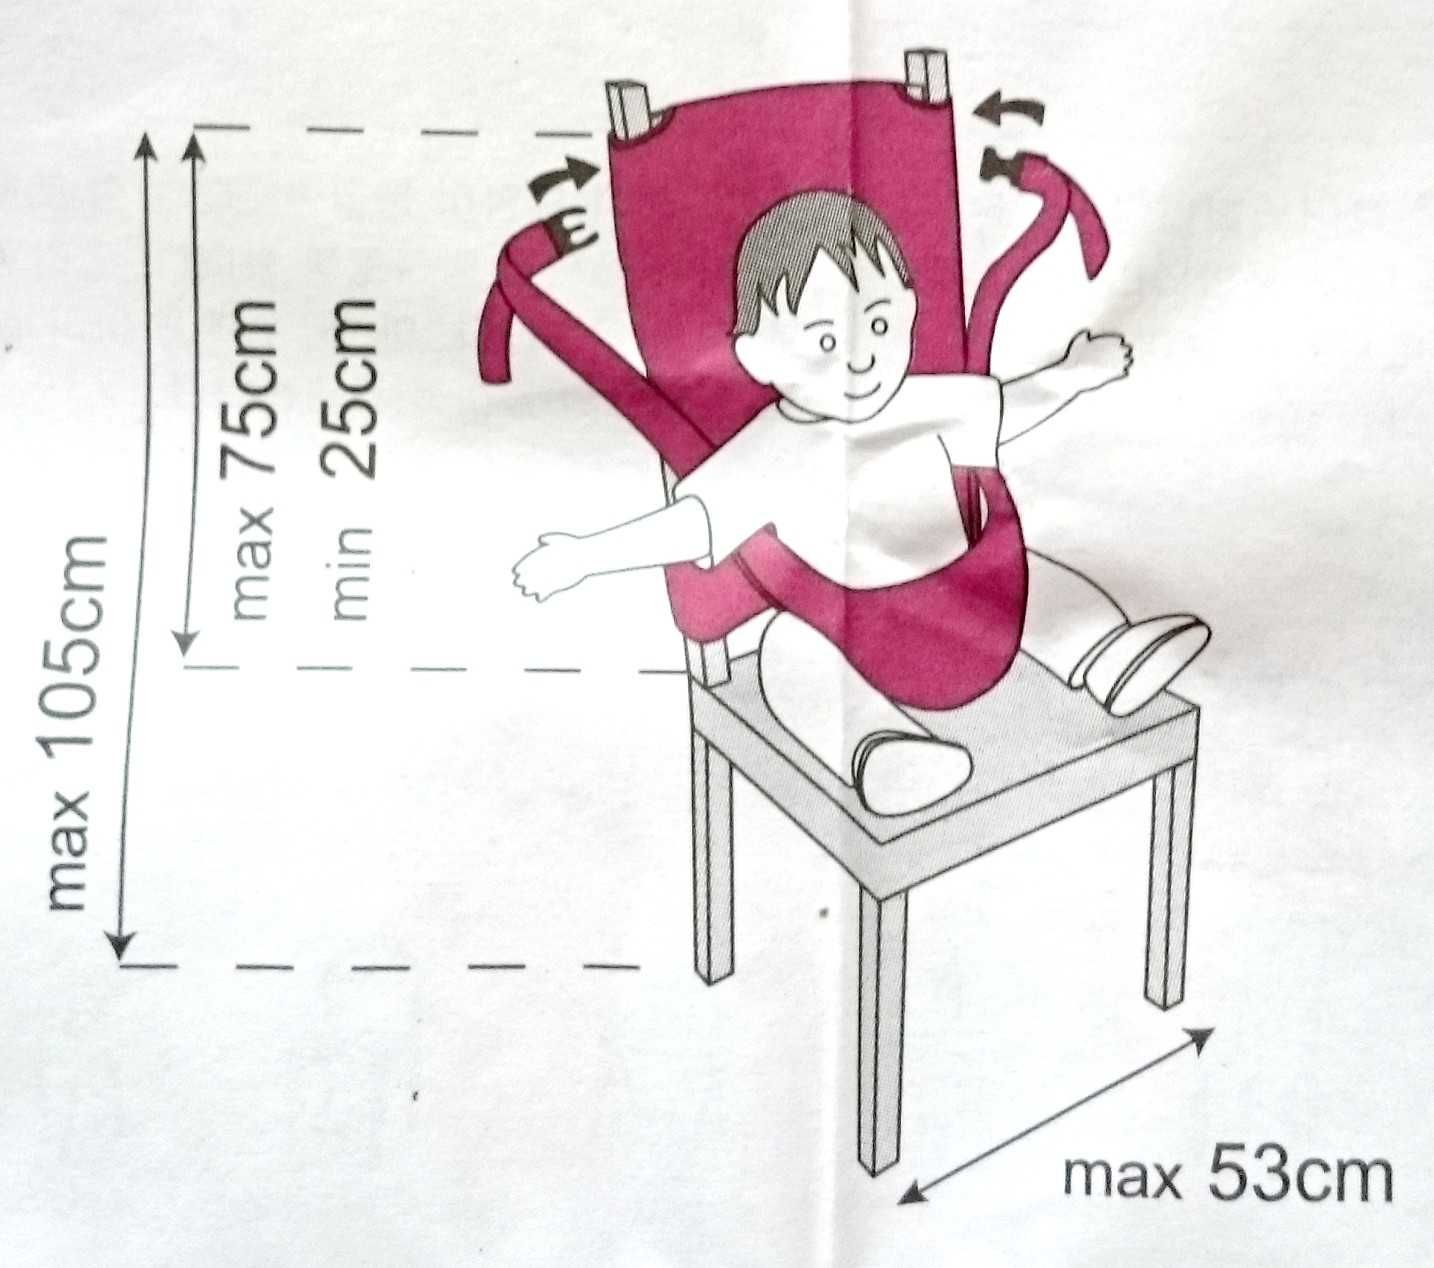 Krzesło dla dziecka fotelik do stołu pasy szelki turystyczne siedzisko